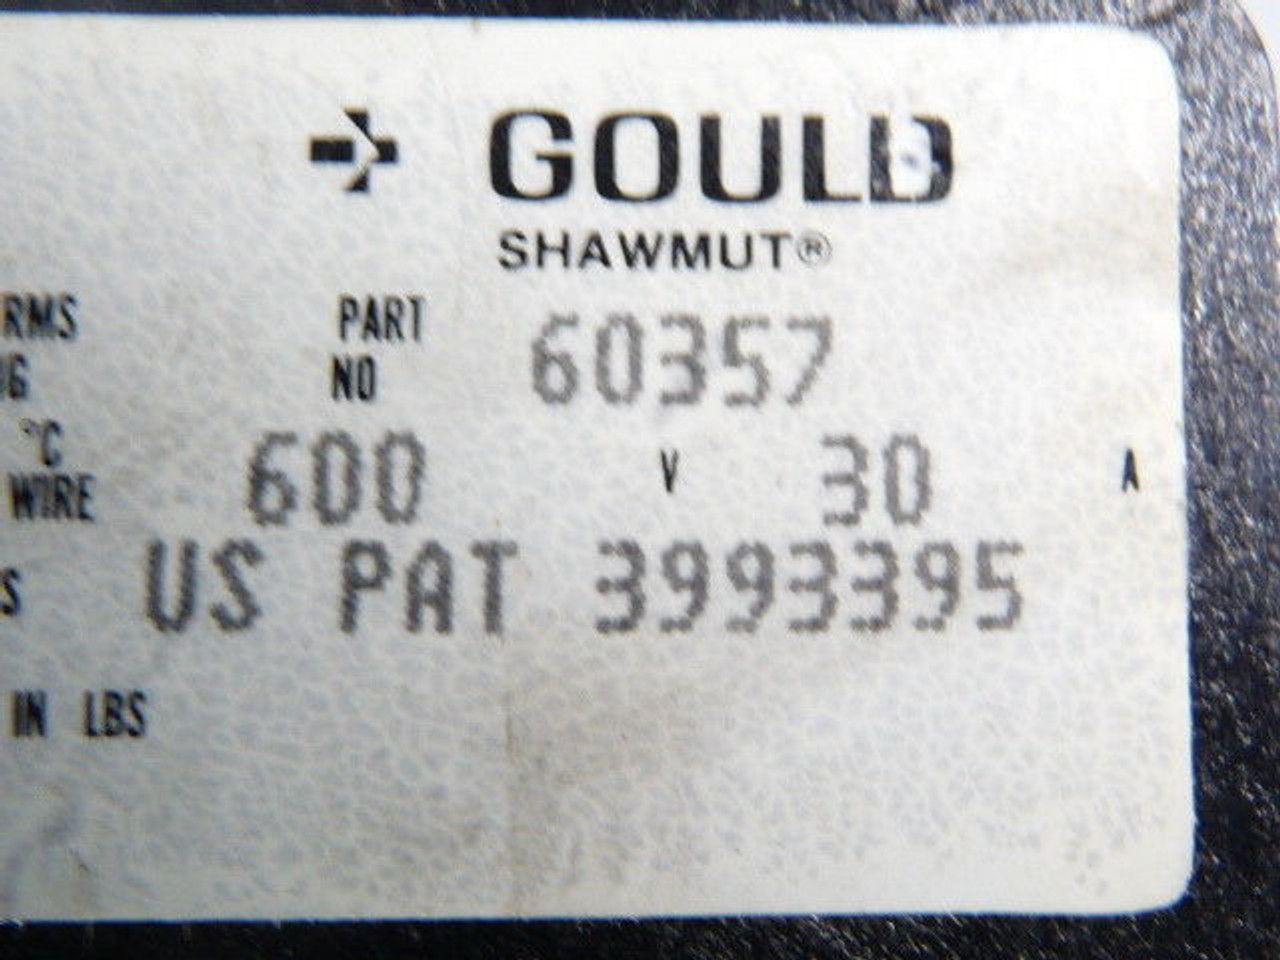 Gould Shawmut 60357 Fuse Holder 30A 600V 2-Pole USED